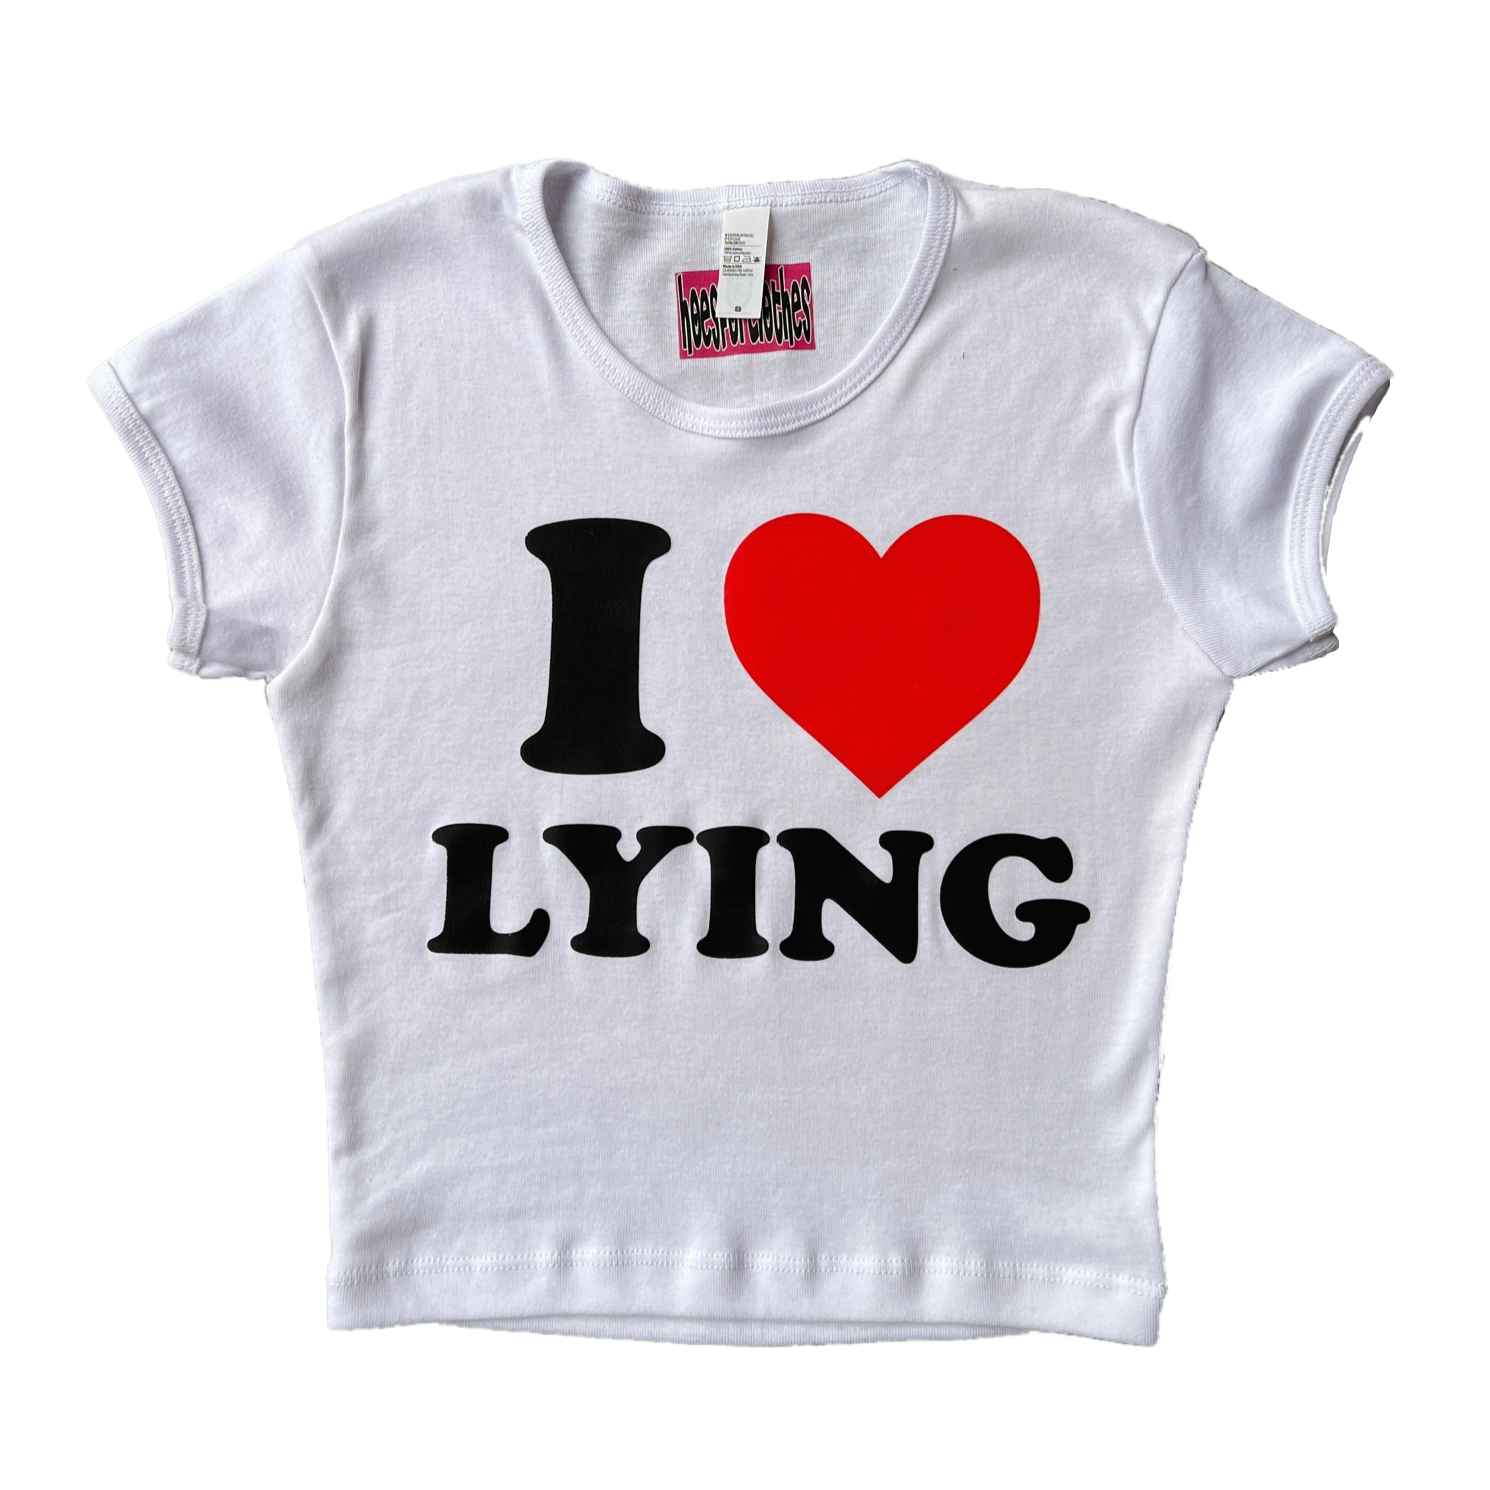 I <3 Lying Baby Tee